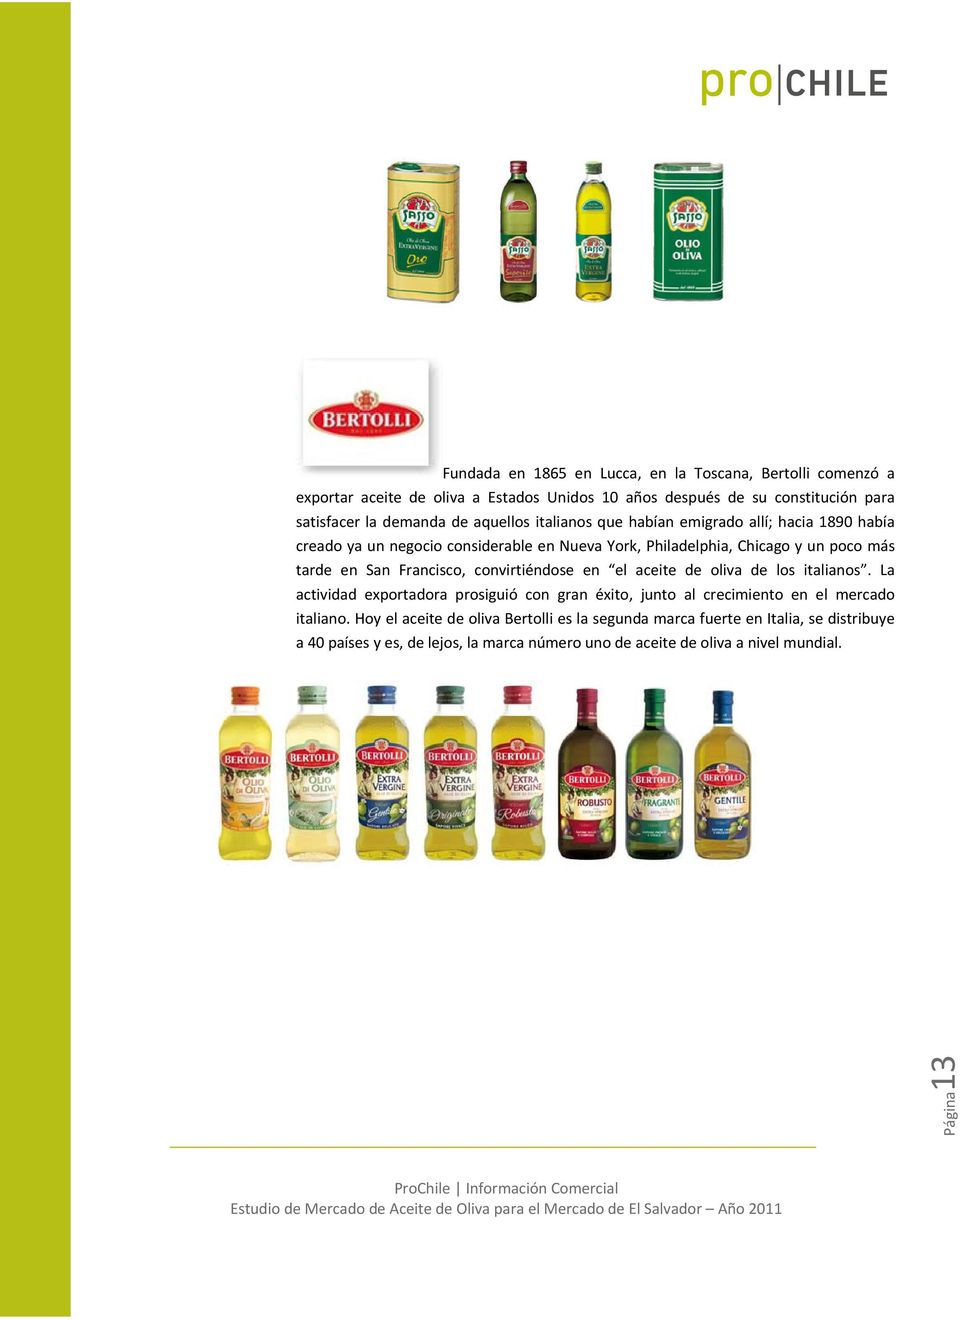 Francisco, convirtiéndose en el aceite de oliva de los italianos. La actividad exportadora prosiguió con gran éxito, junto al crecimiento en el mercado italiano.